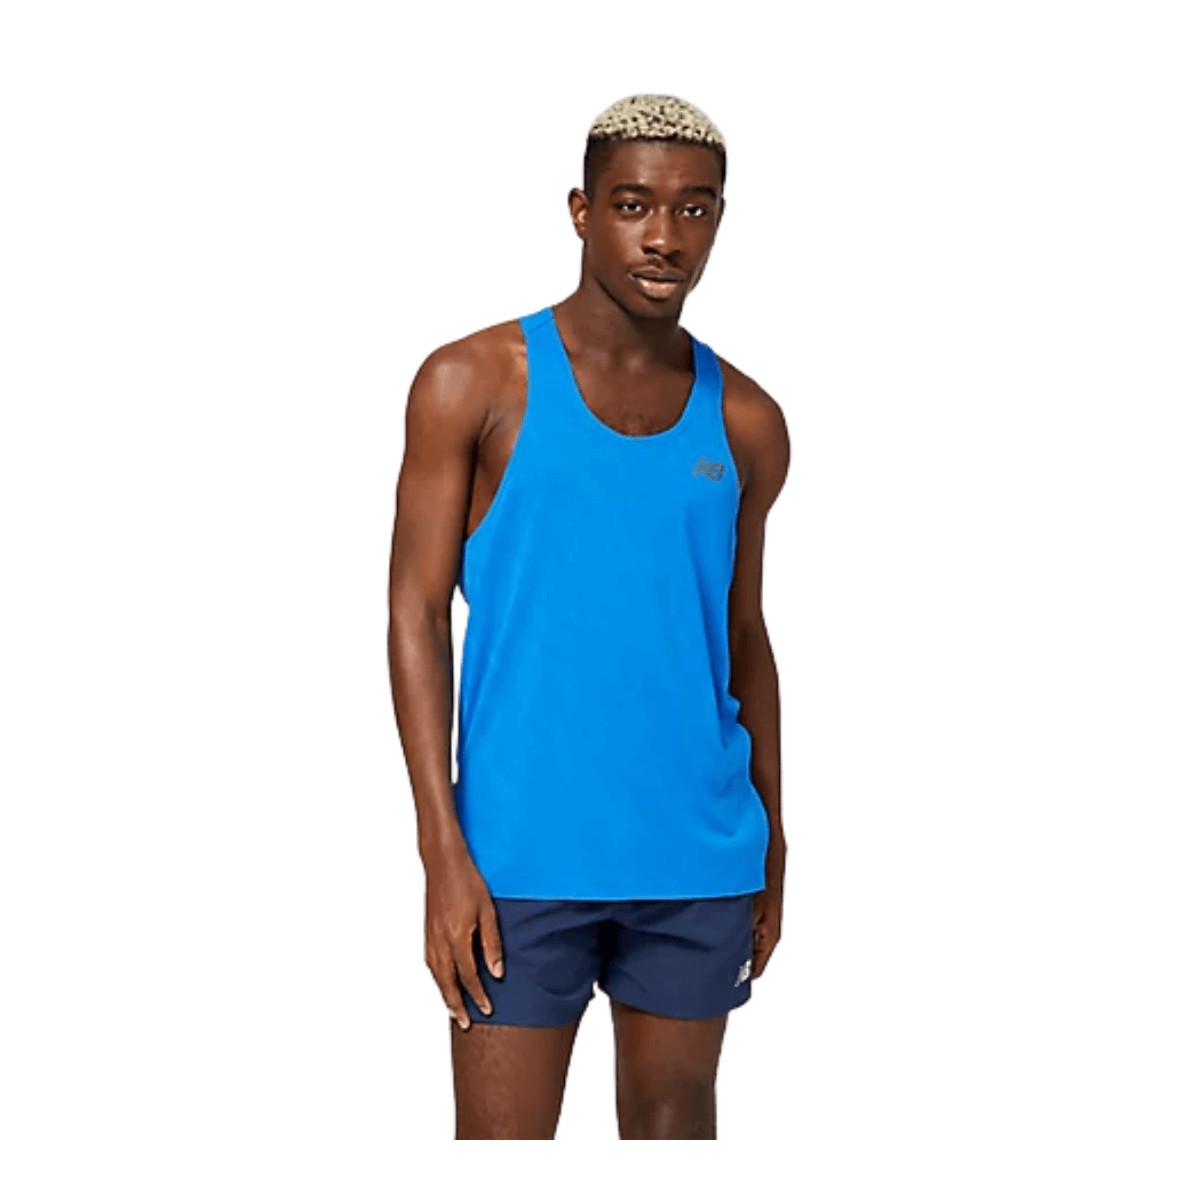 Neue Balance Q Geschwindigkeit Singlet ärmelloses T-Shirt blau, Größe M